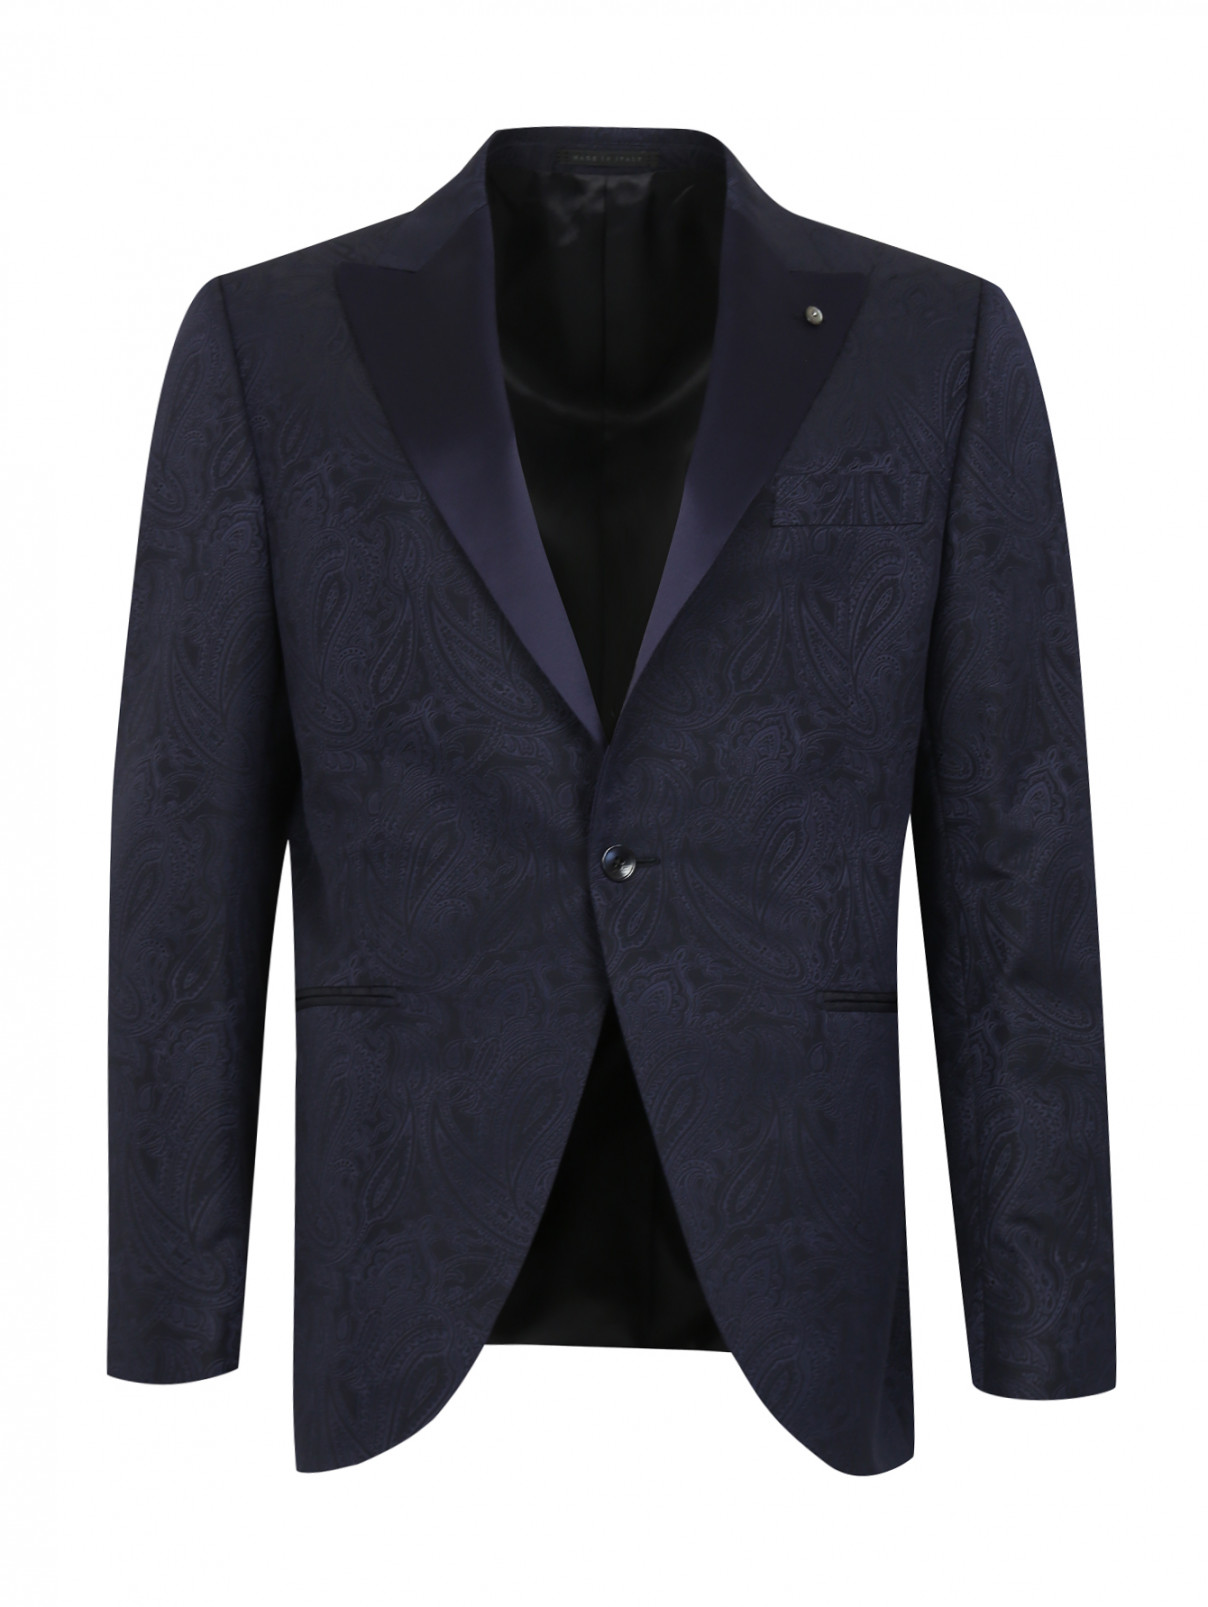 Пиджак из шерсти с узором "пейсли" Luigi Bianchi Mantova  –  Общий вид  – Цвет:  Синий